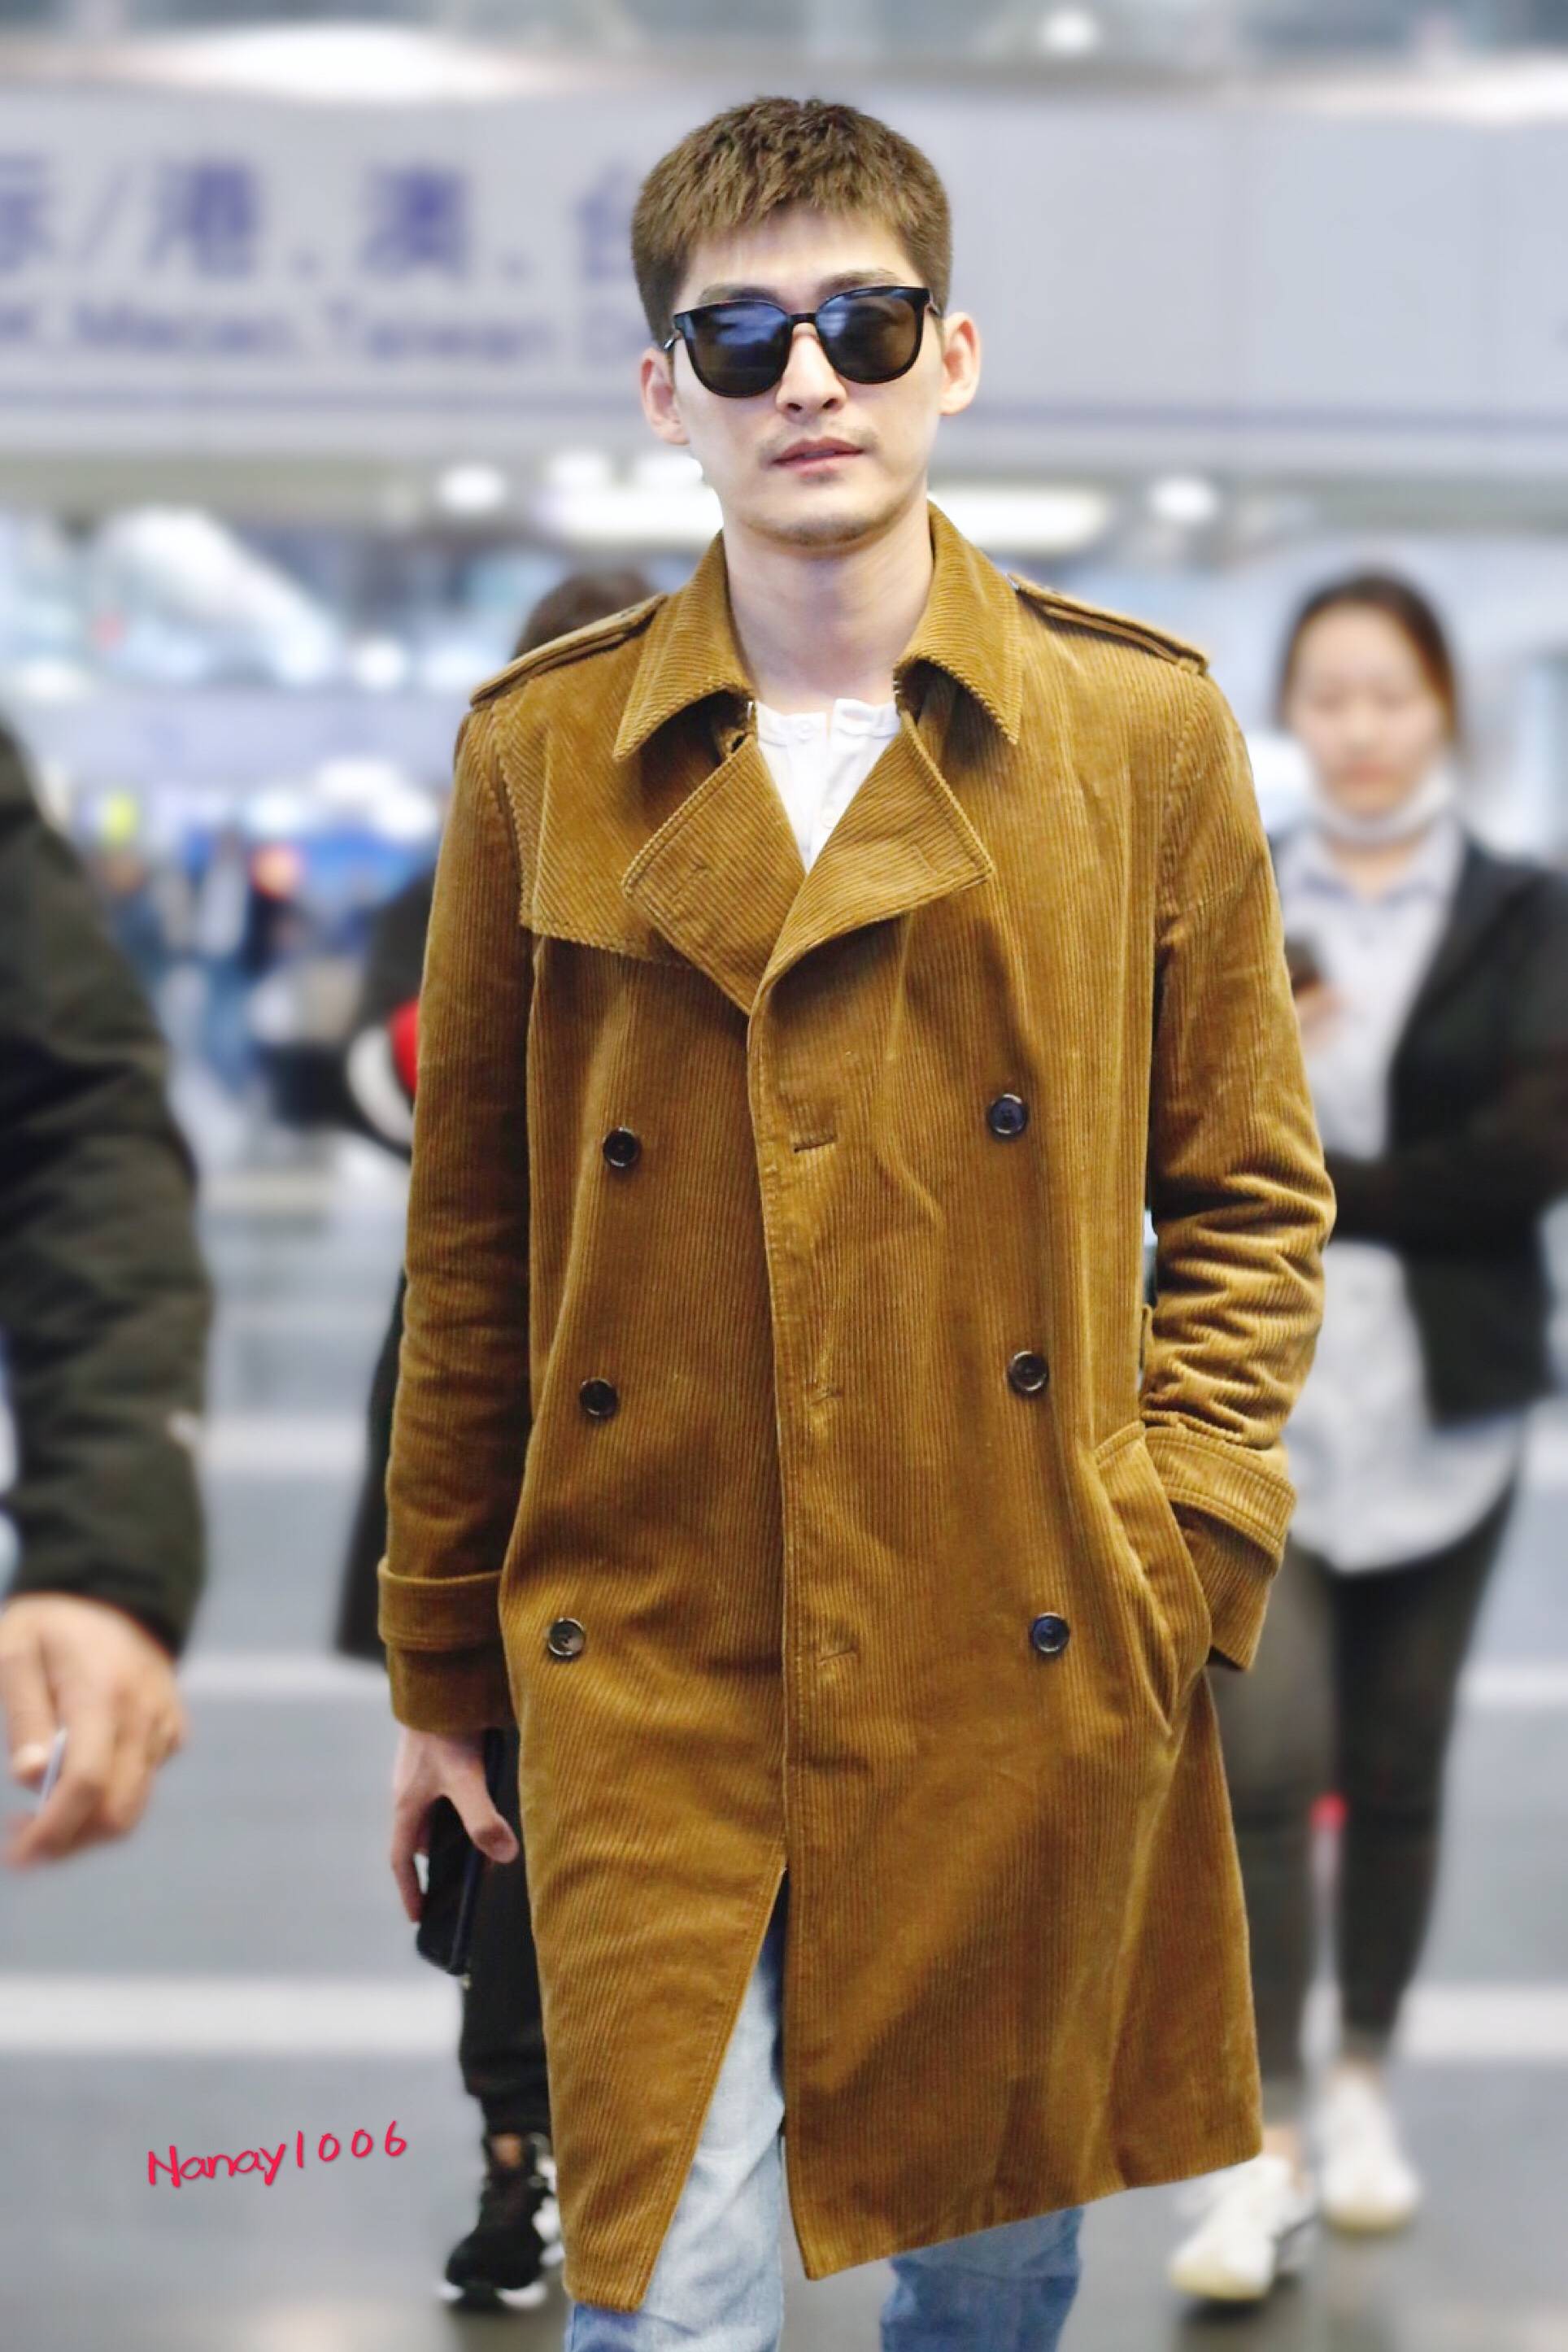 张翰戴墨镜穿棕色长款大衣现身机场,皮肤白皙帅气十足